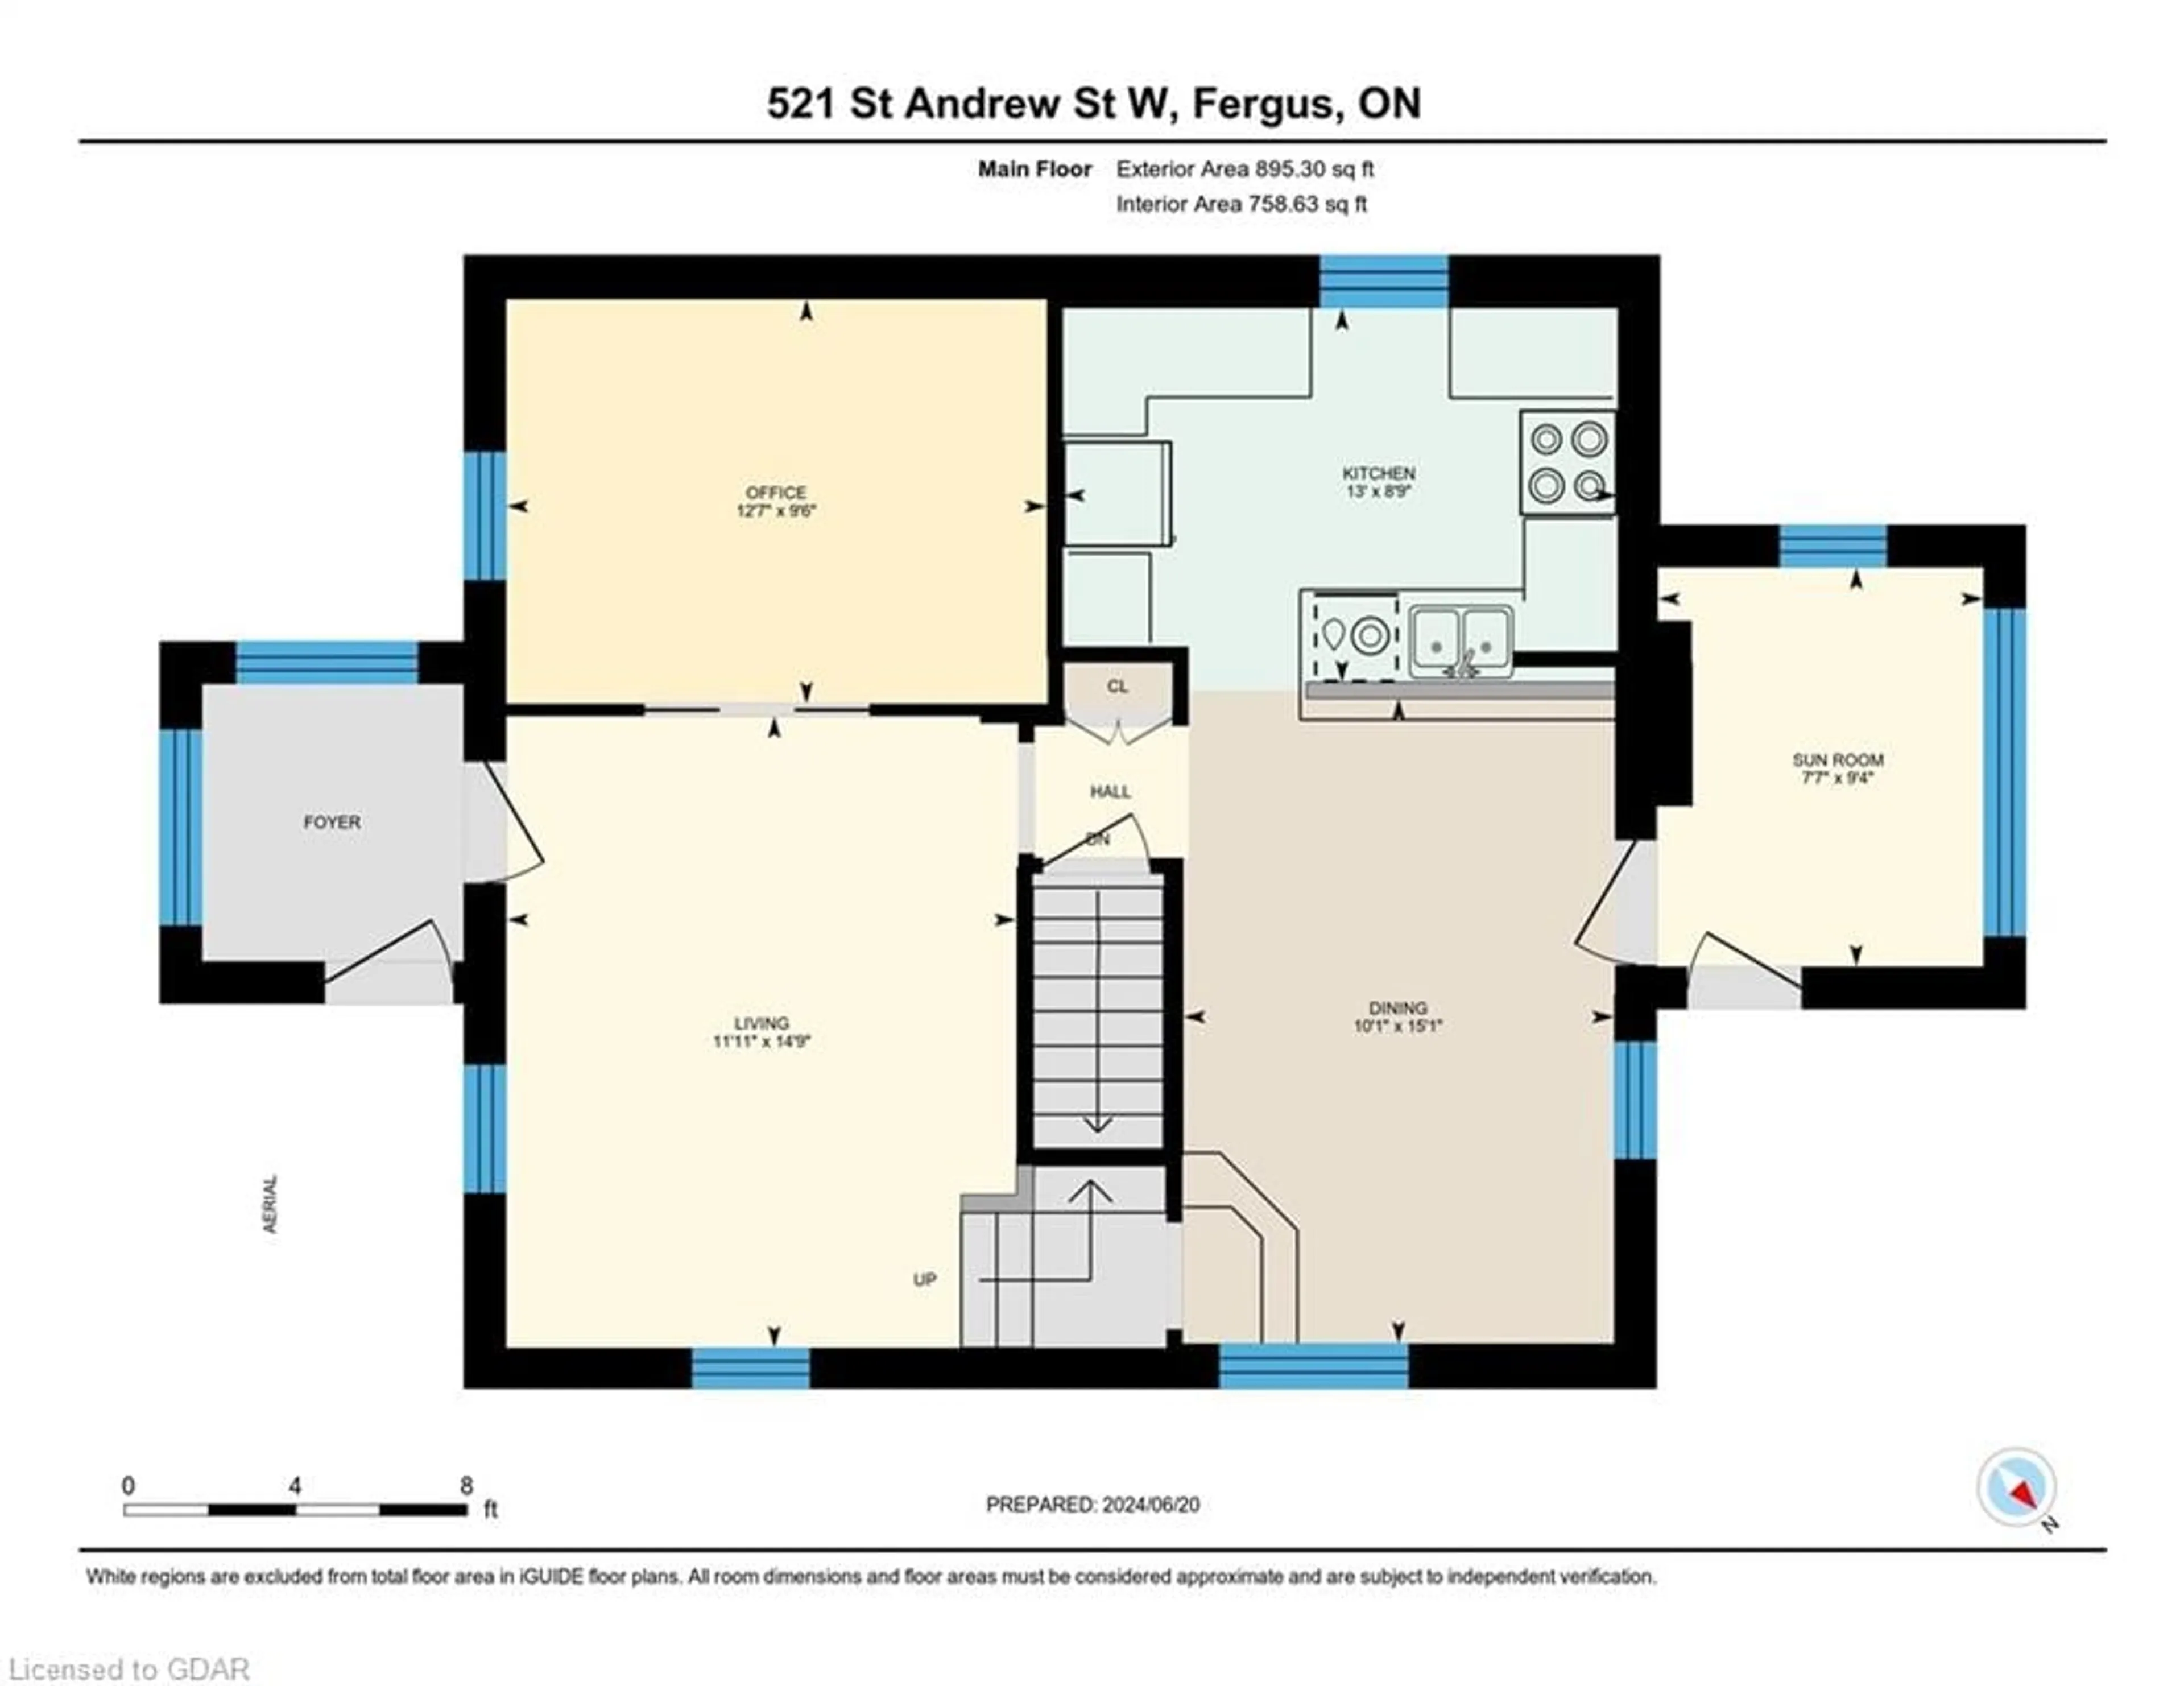 Floor plan for 521 St Andrew St, Fergus Ontario N1M 1P4